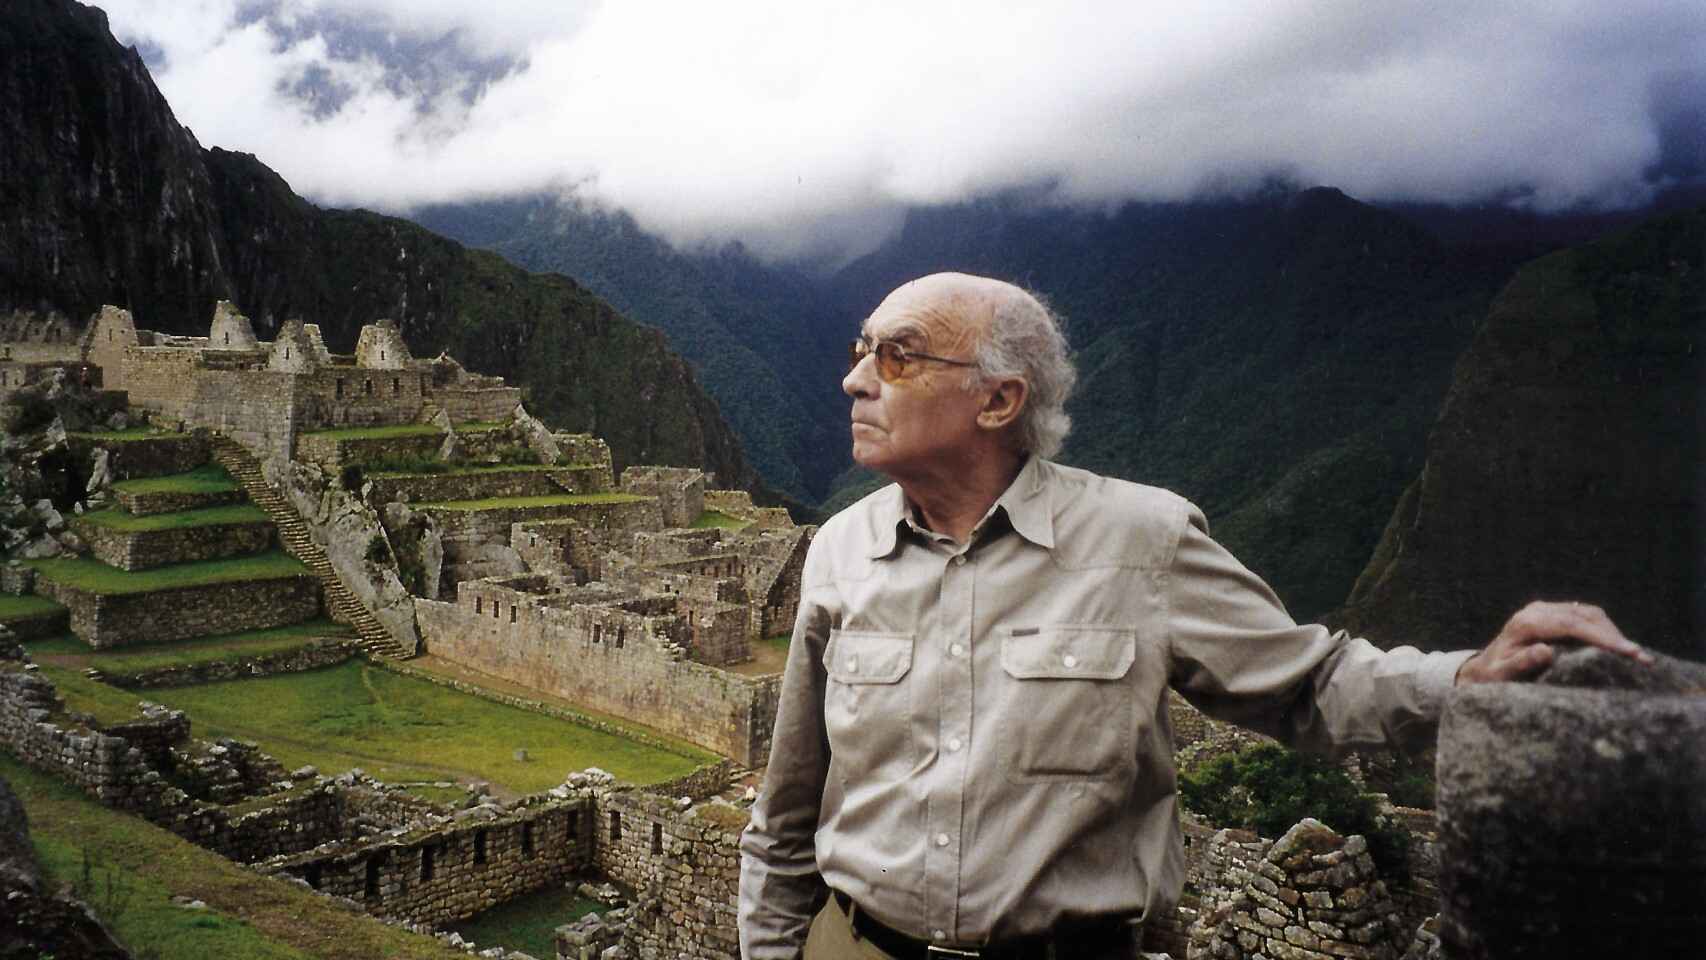 José Saramago en una visita a Machu Picchu (Perú), 2000. Foto: Fundación José Saramago